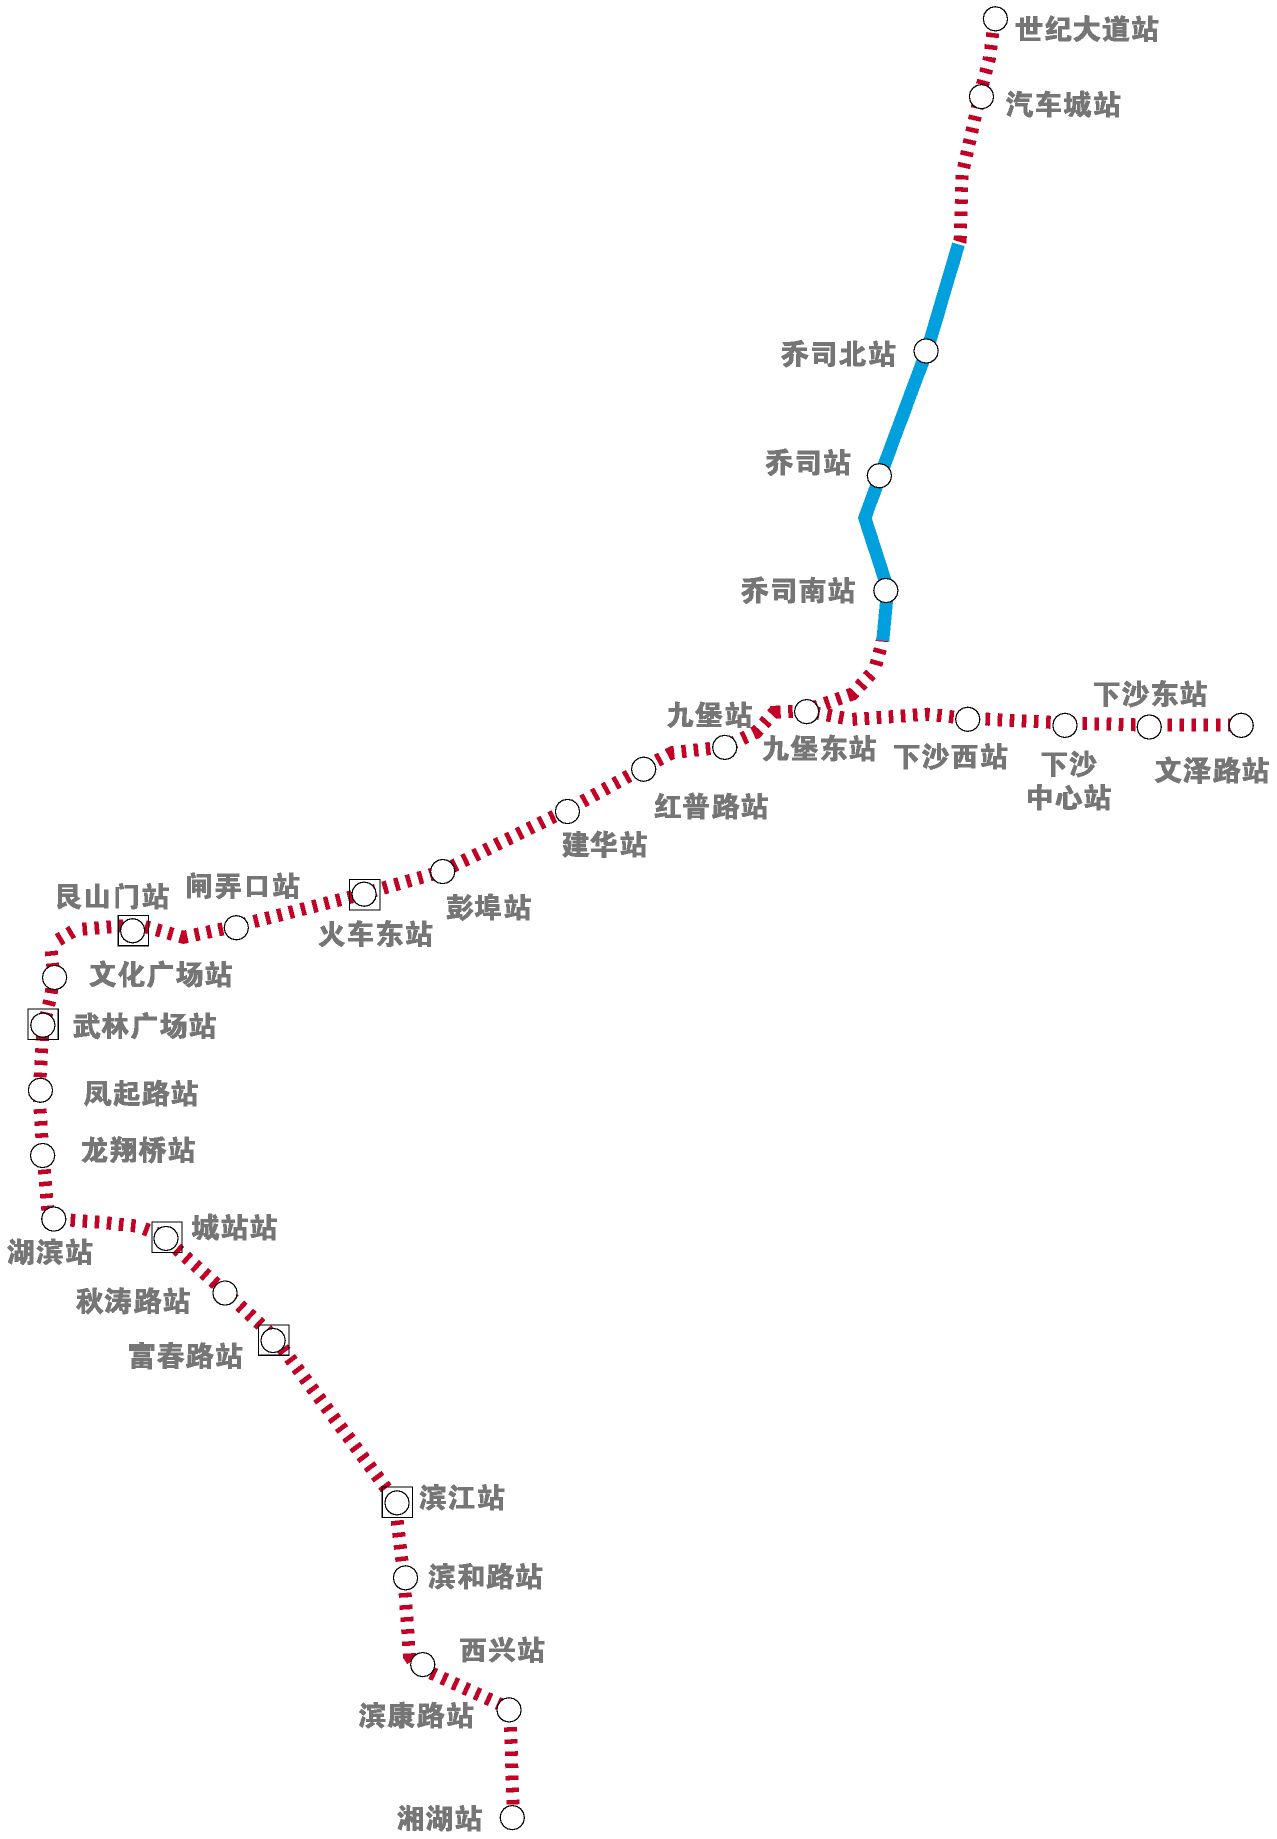 临平一号地铁线路图图片